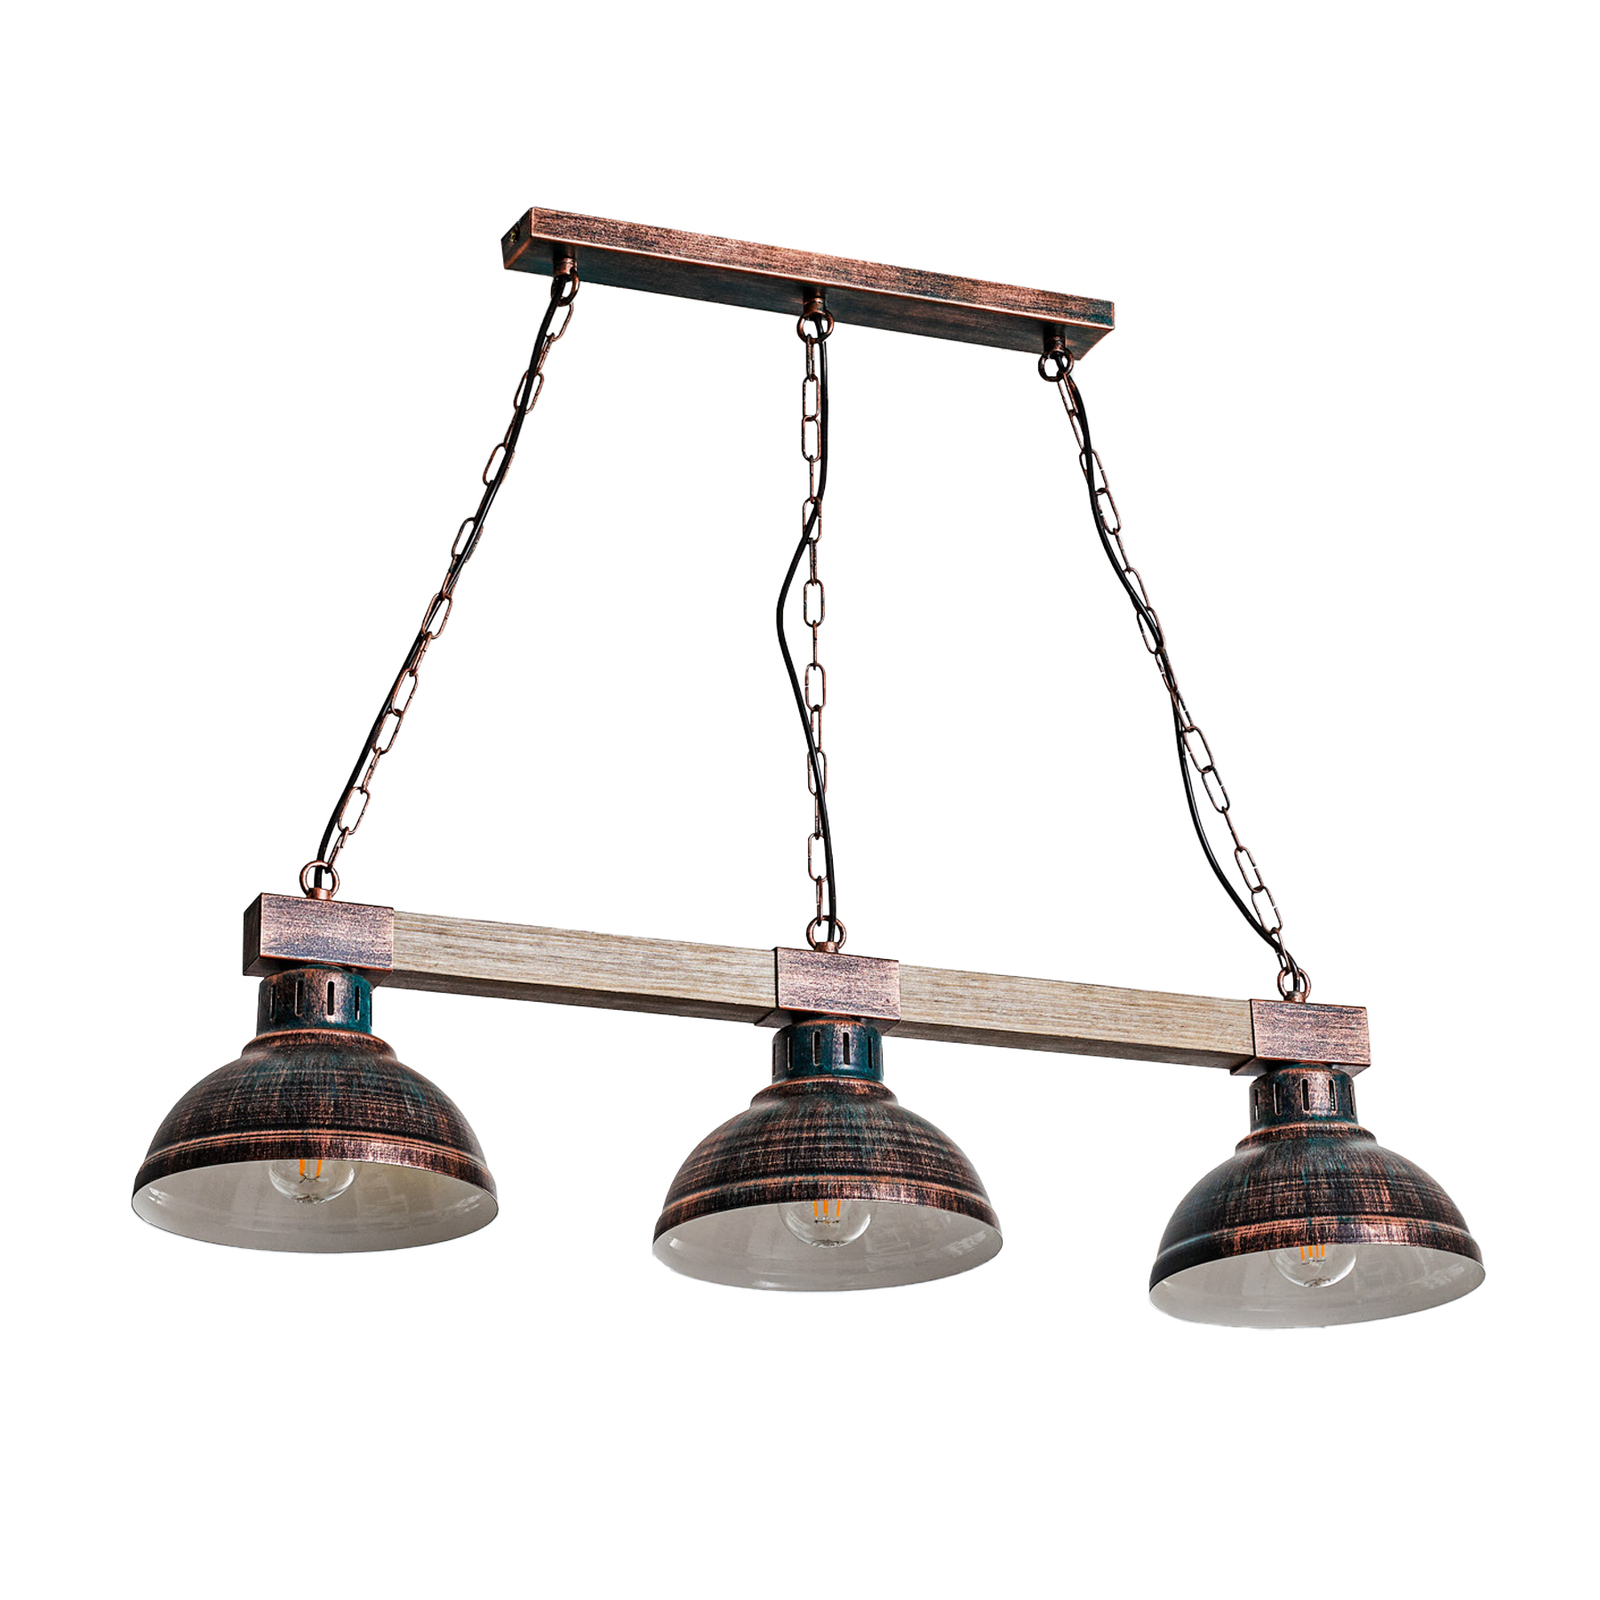 Hakon hængelampe med tre lys rustbrun/naturligt træ